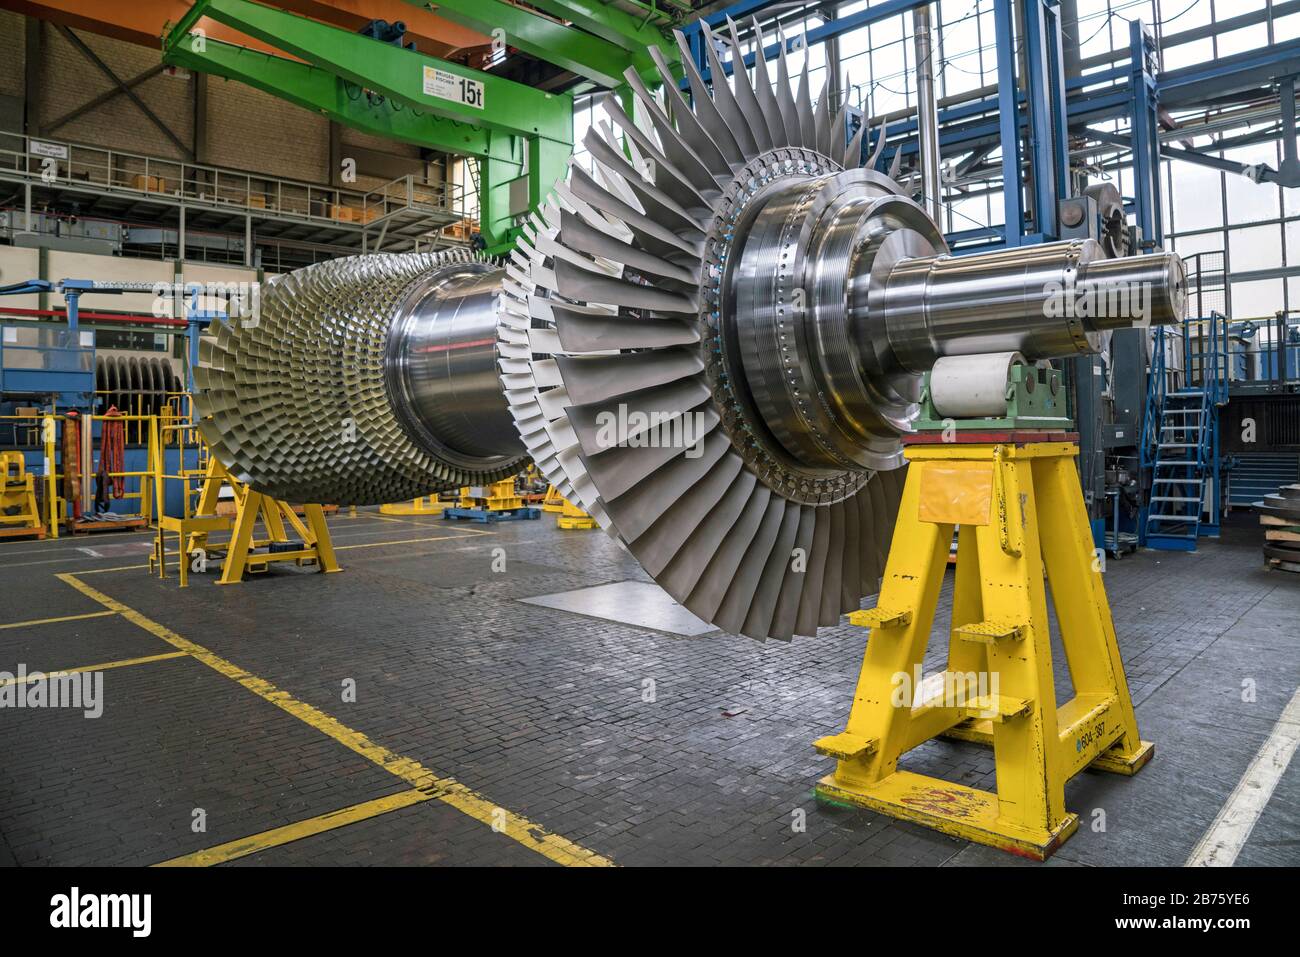 Alemania, Berlín, 02.03.2017. Planta de turbinas de gas Siemens en Berlín en 02.03.2017. [traducción automática] Foto de stock